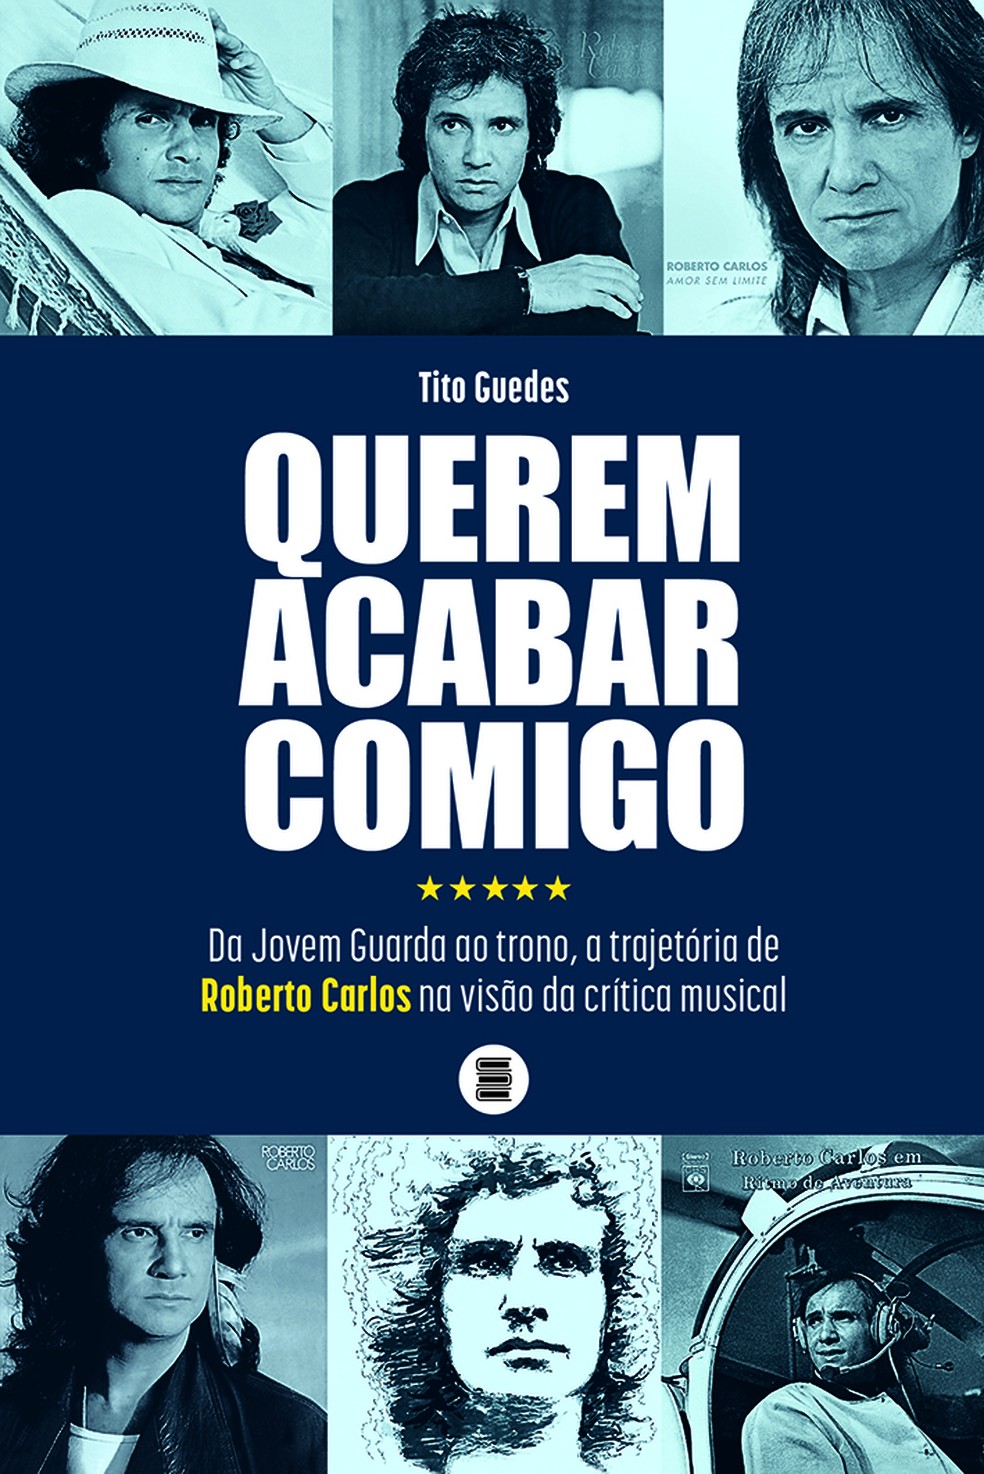 Livro sobre Roberto Carlos e a crítica musical mostra que o tempo é o rei  na avaliação dos discos do artista | Blog do Mauro Ferreira | G1